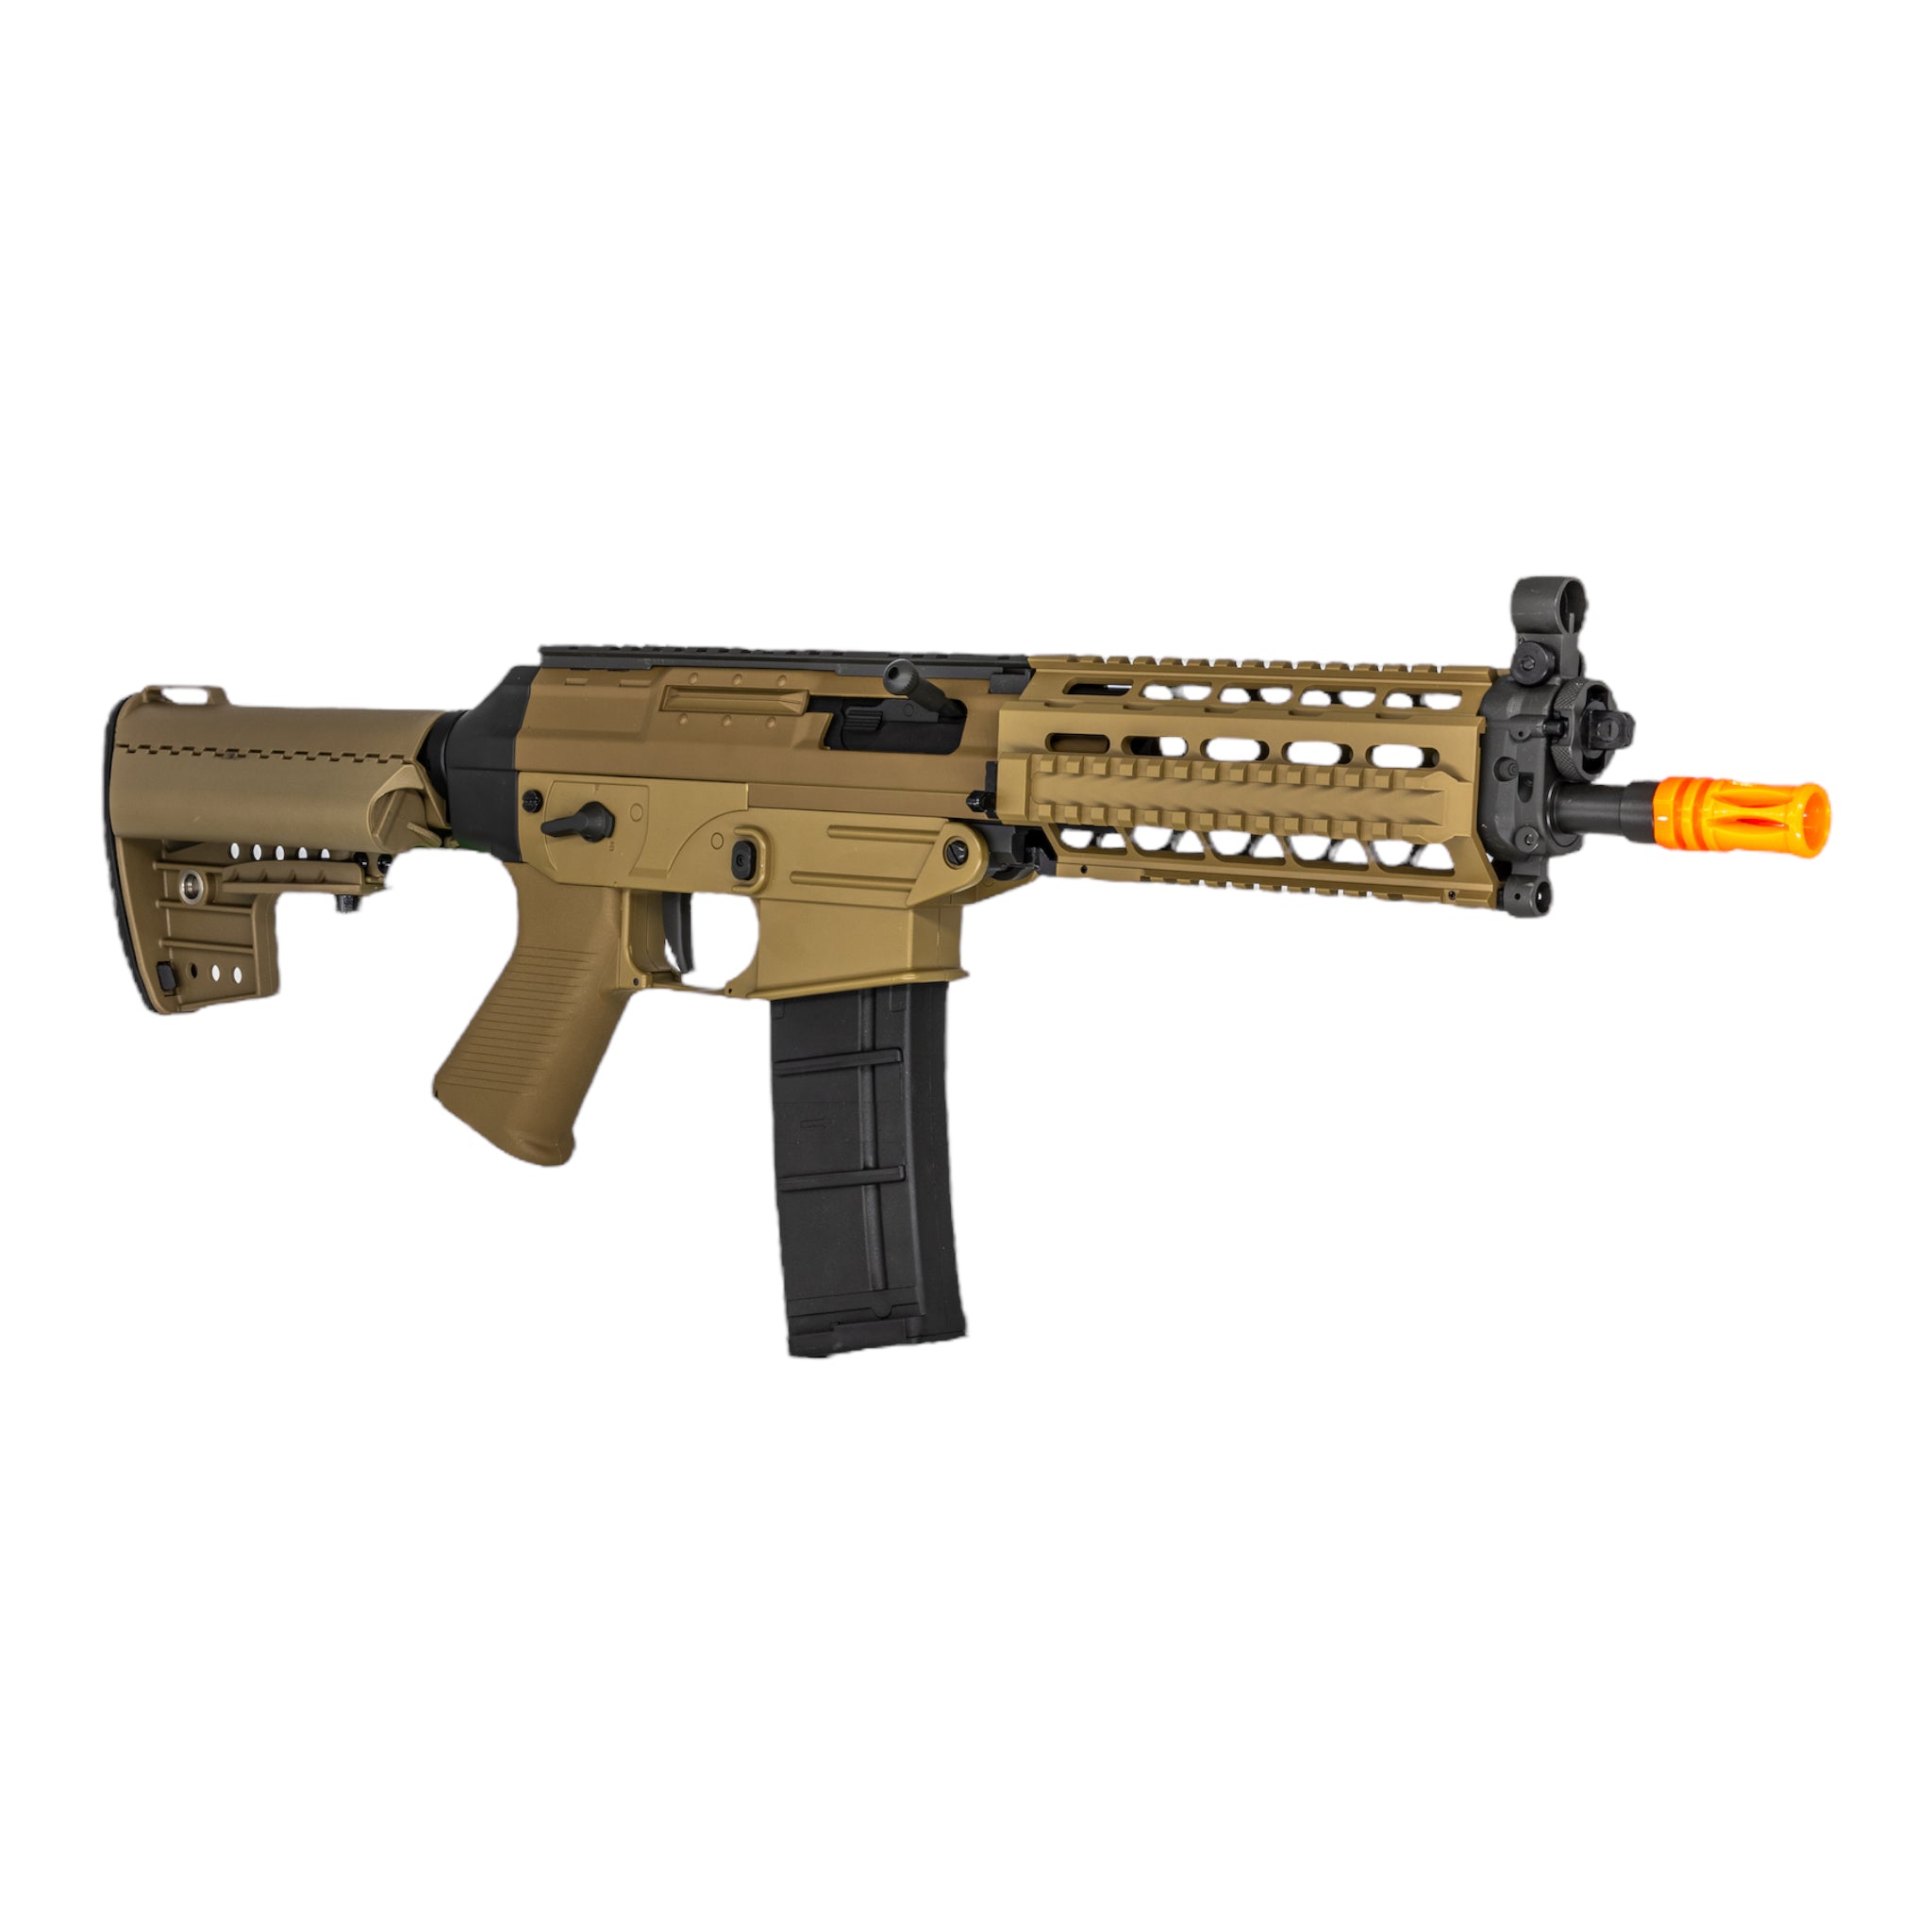 Cybergun/Swiss Arms SBR SG556 RIS Airsoft AEG Rifle (Tan) - ssairsoft.com